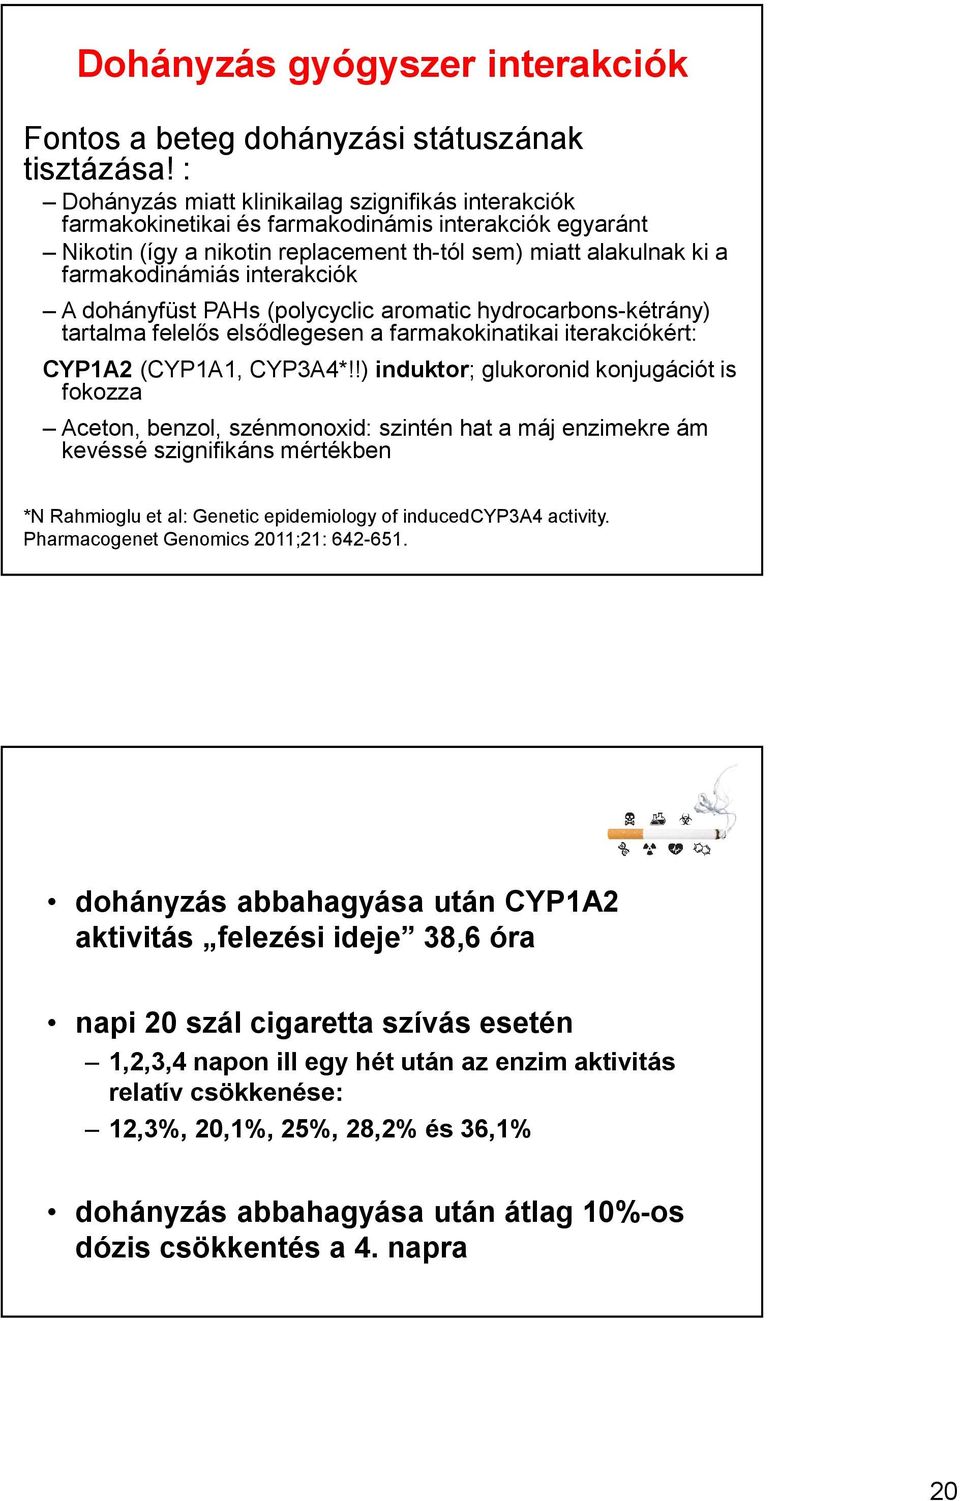 interakciók A dohányfüst PAHs (polycyclic aromatic hydrocarbons-kétrány) tartalma felelős elsődlegesen a farmakokinatikai iterakciókért: CYP1A2(CYP1A1, CYP3A4*!